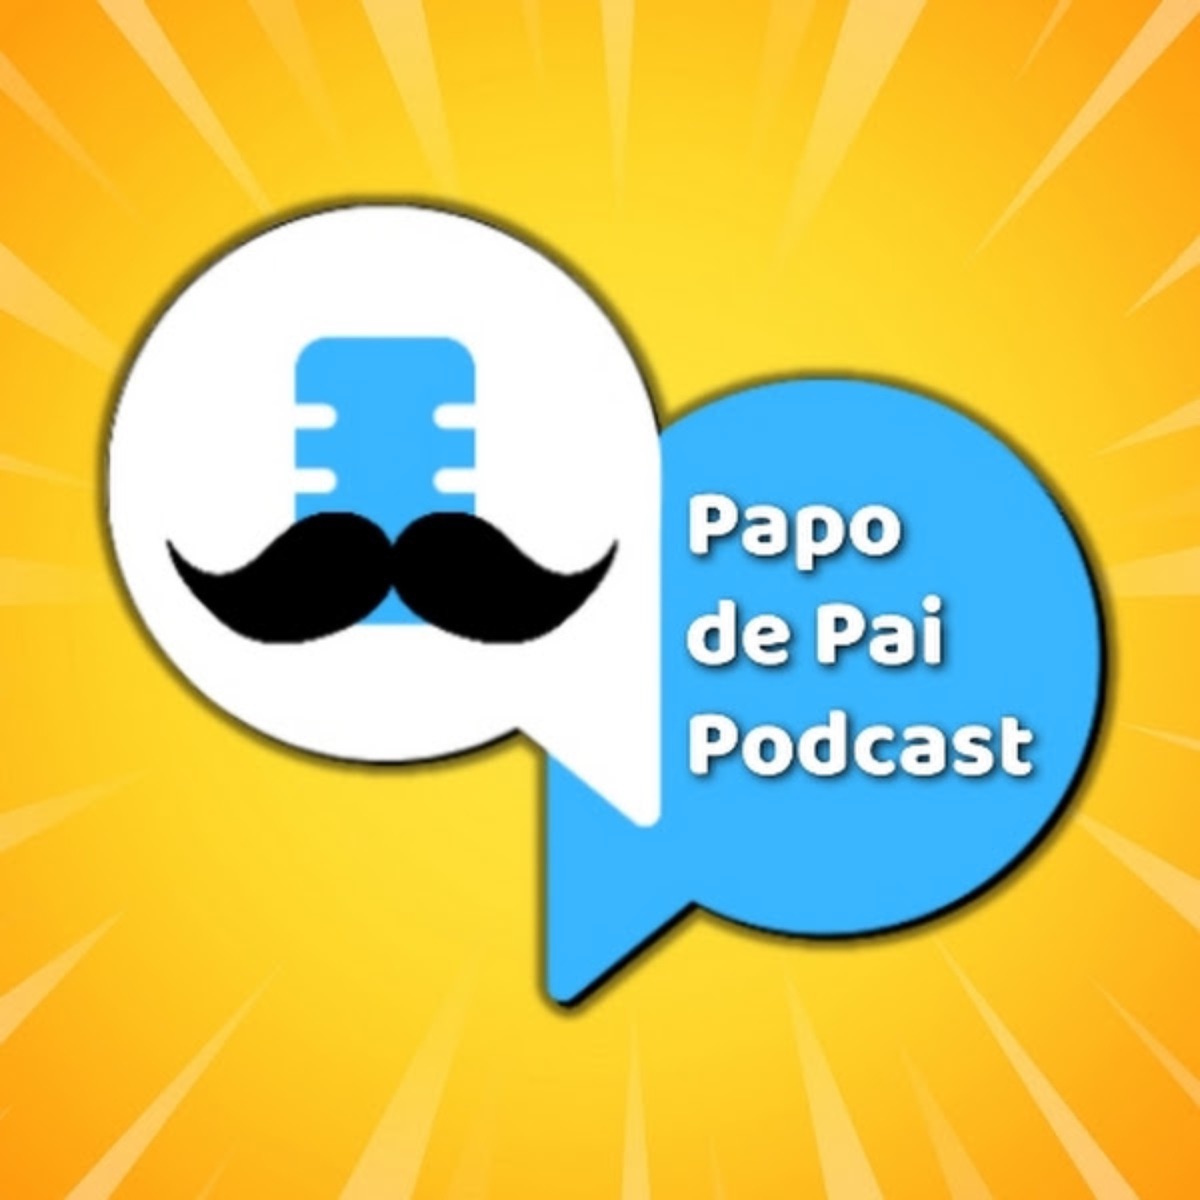 PAPO DE PAI PODCAST – Podcast – Podtail